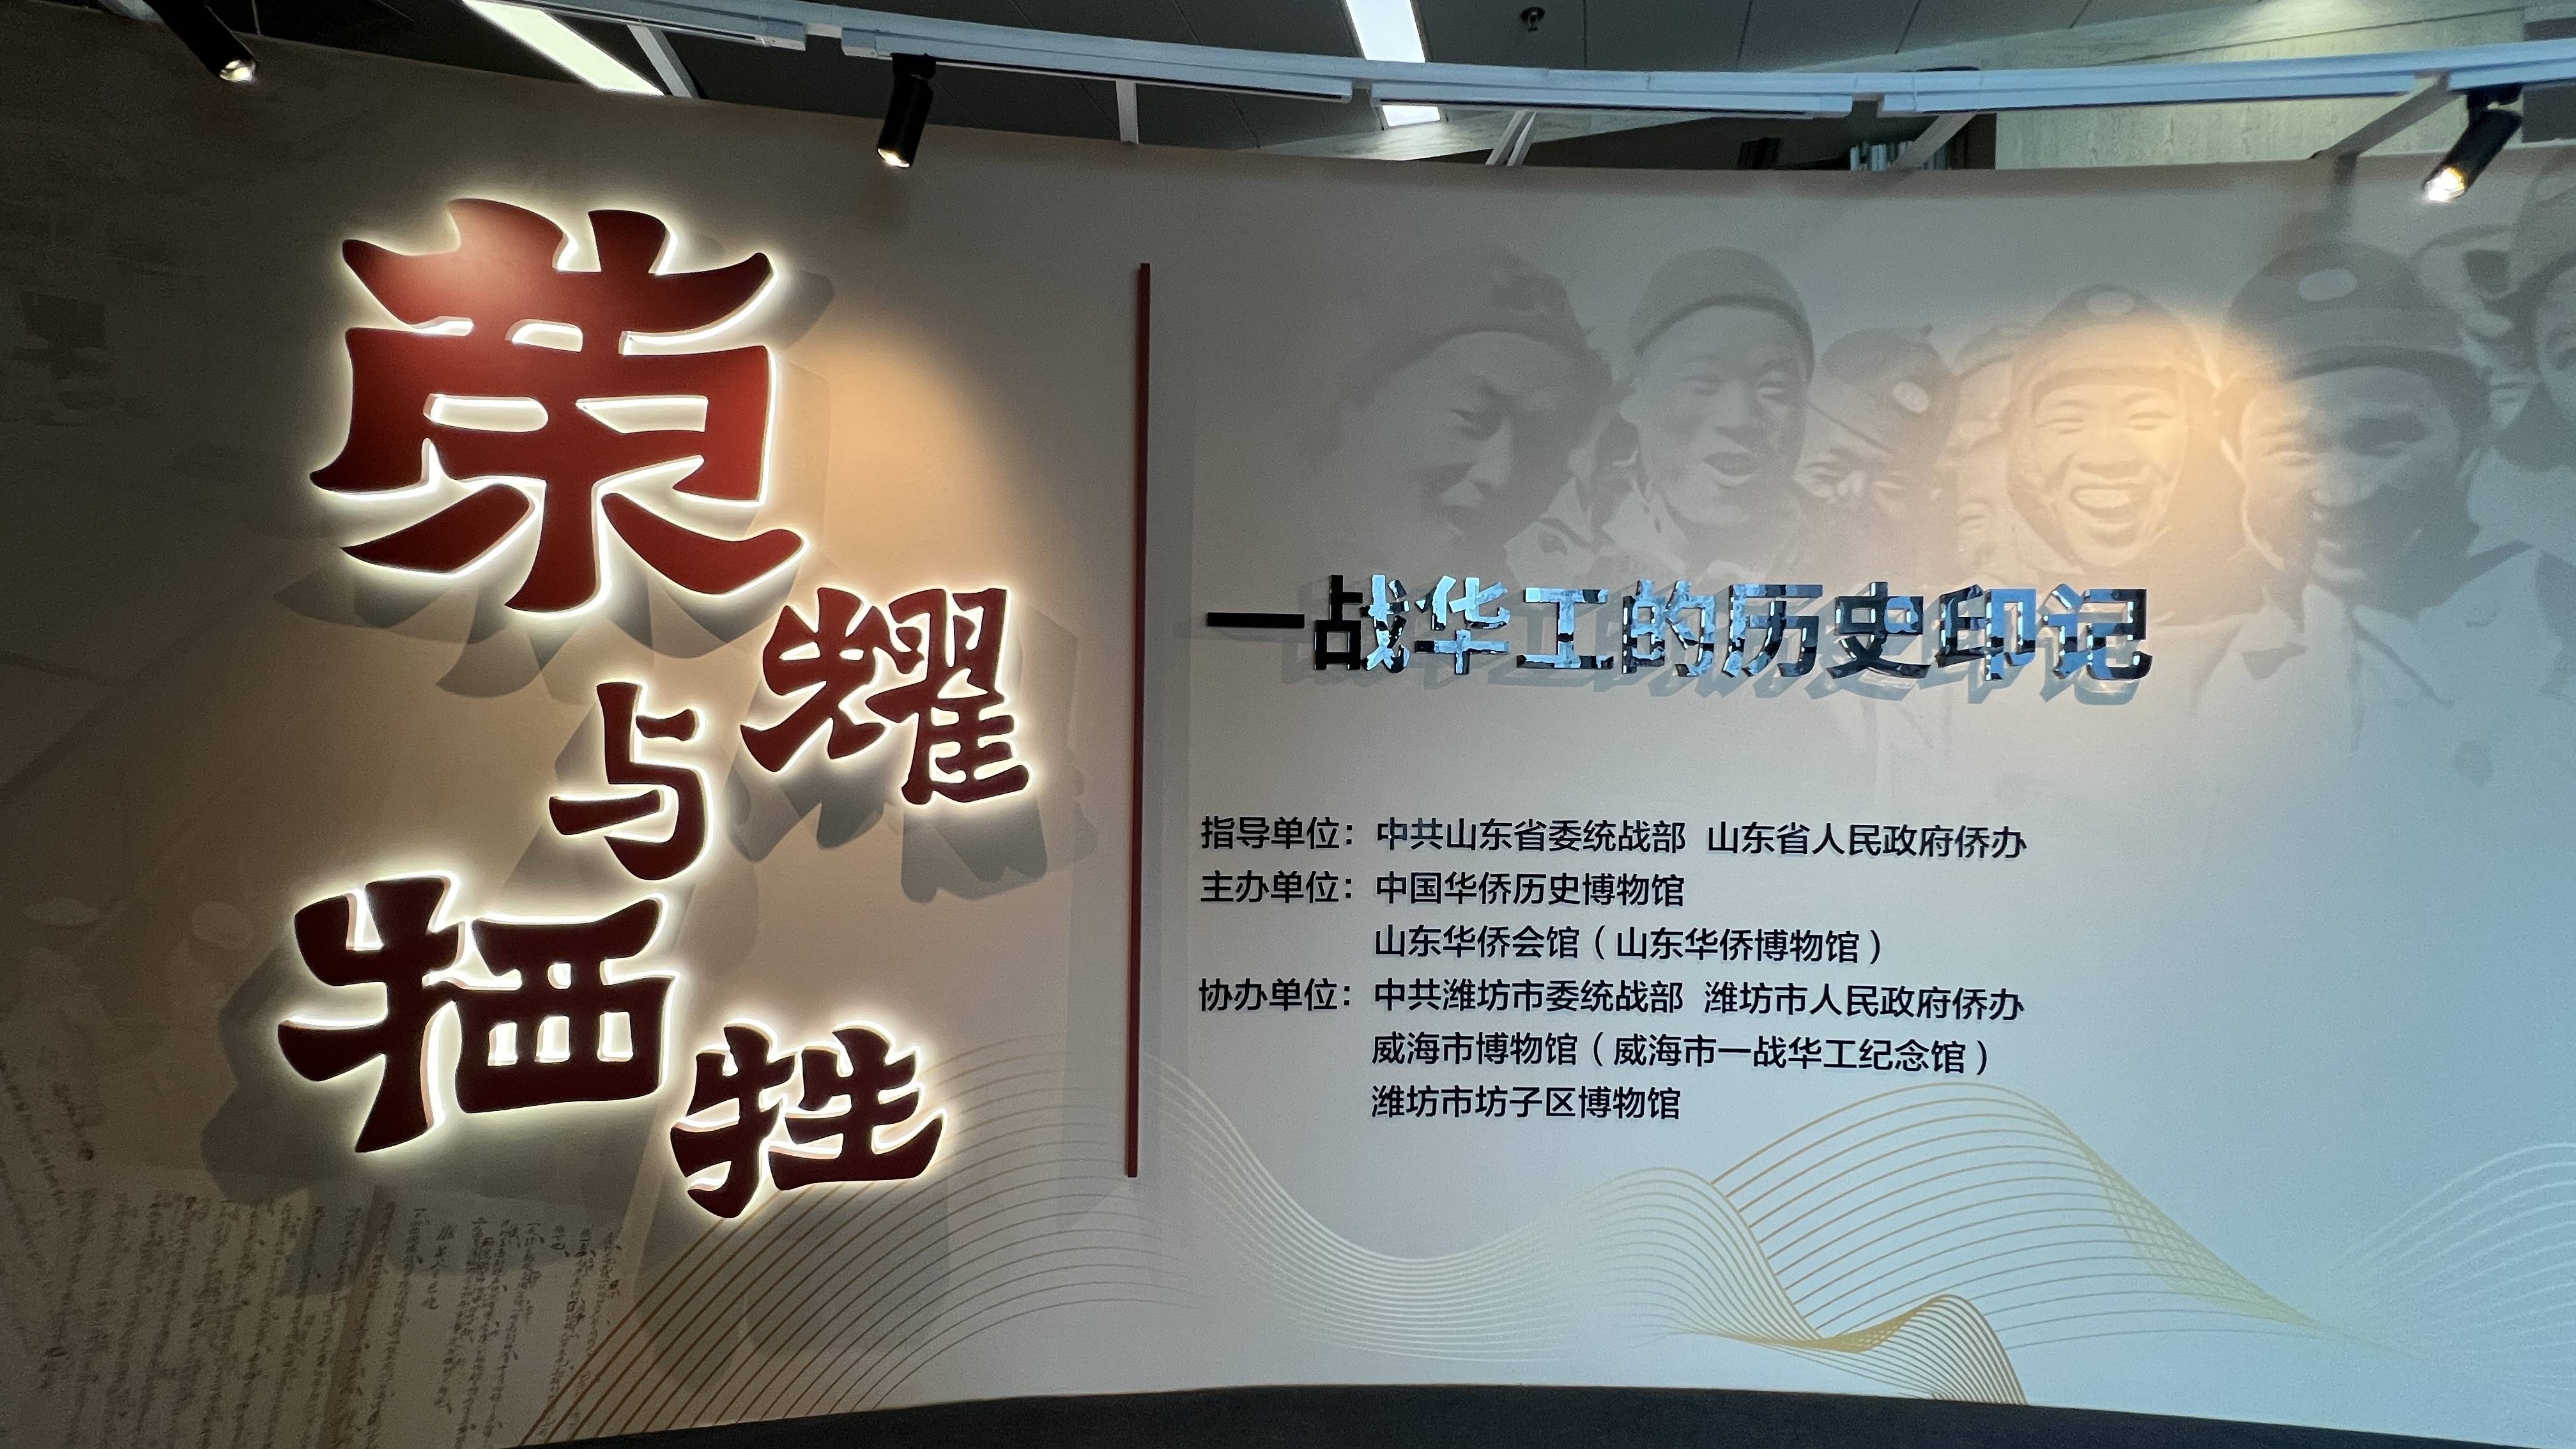 一战华工的历史印记展览在京开幕                